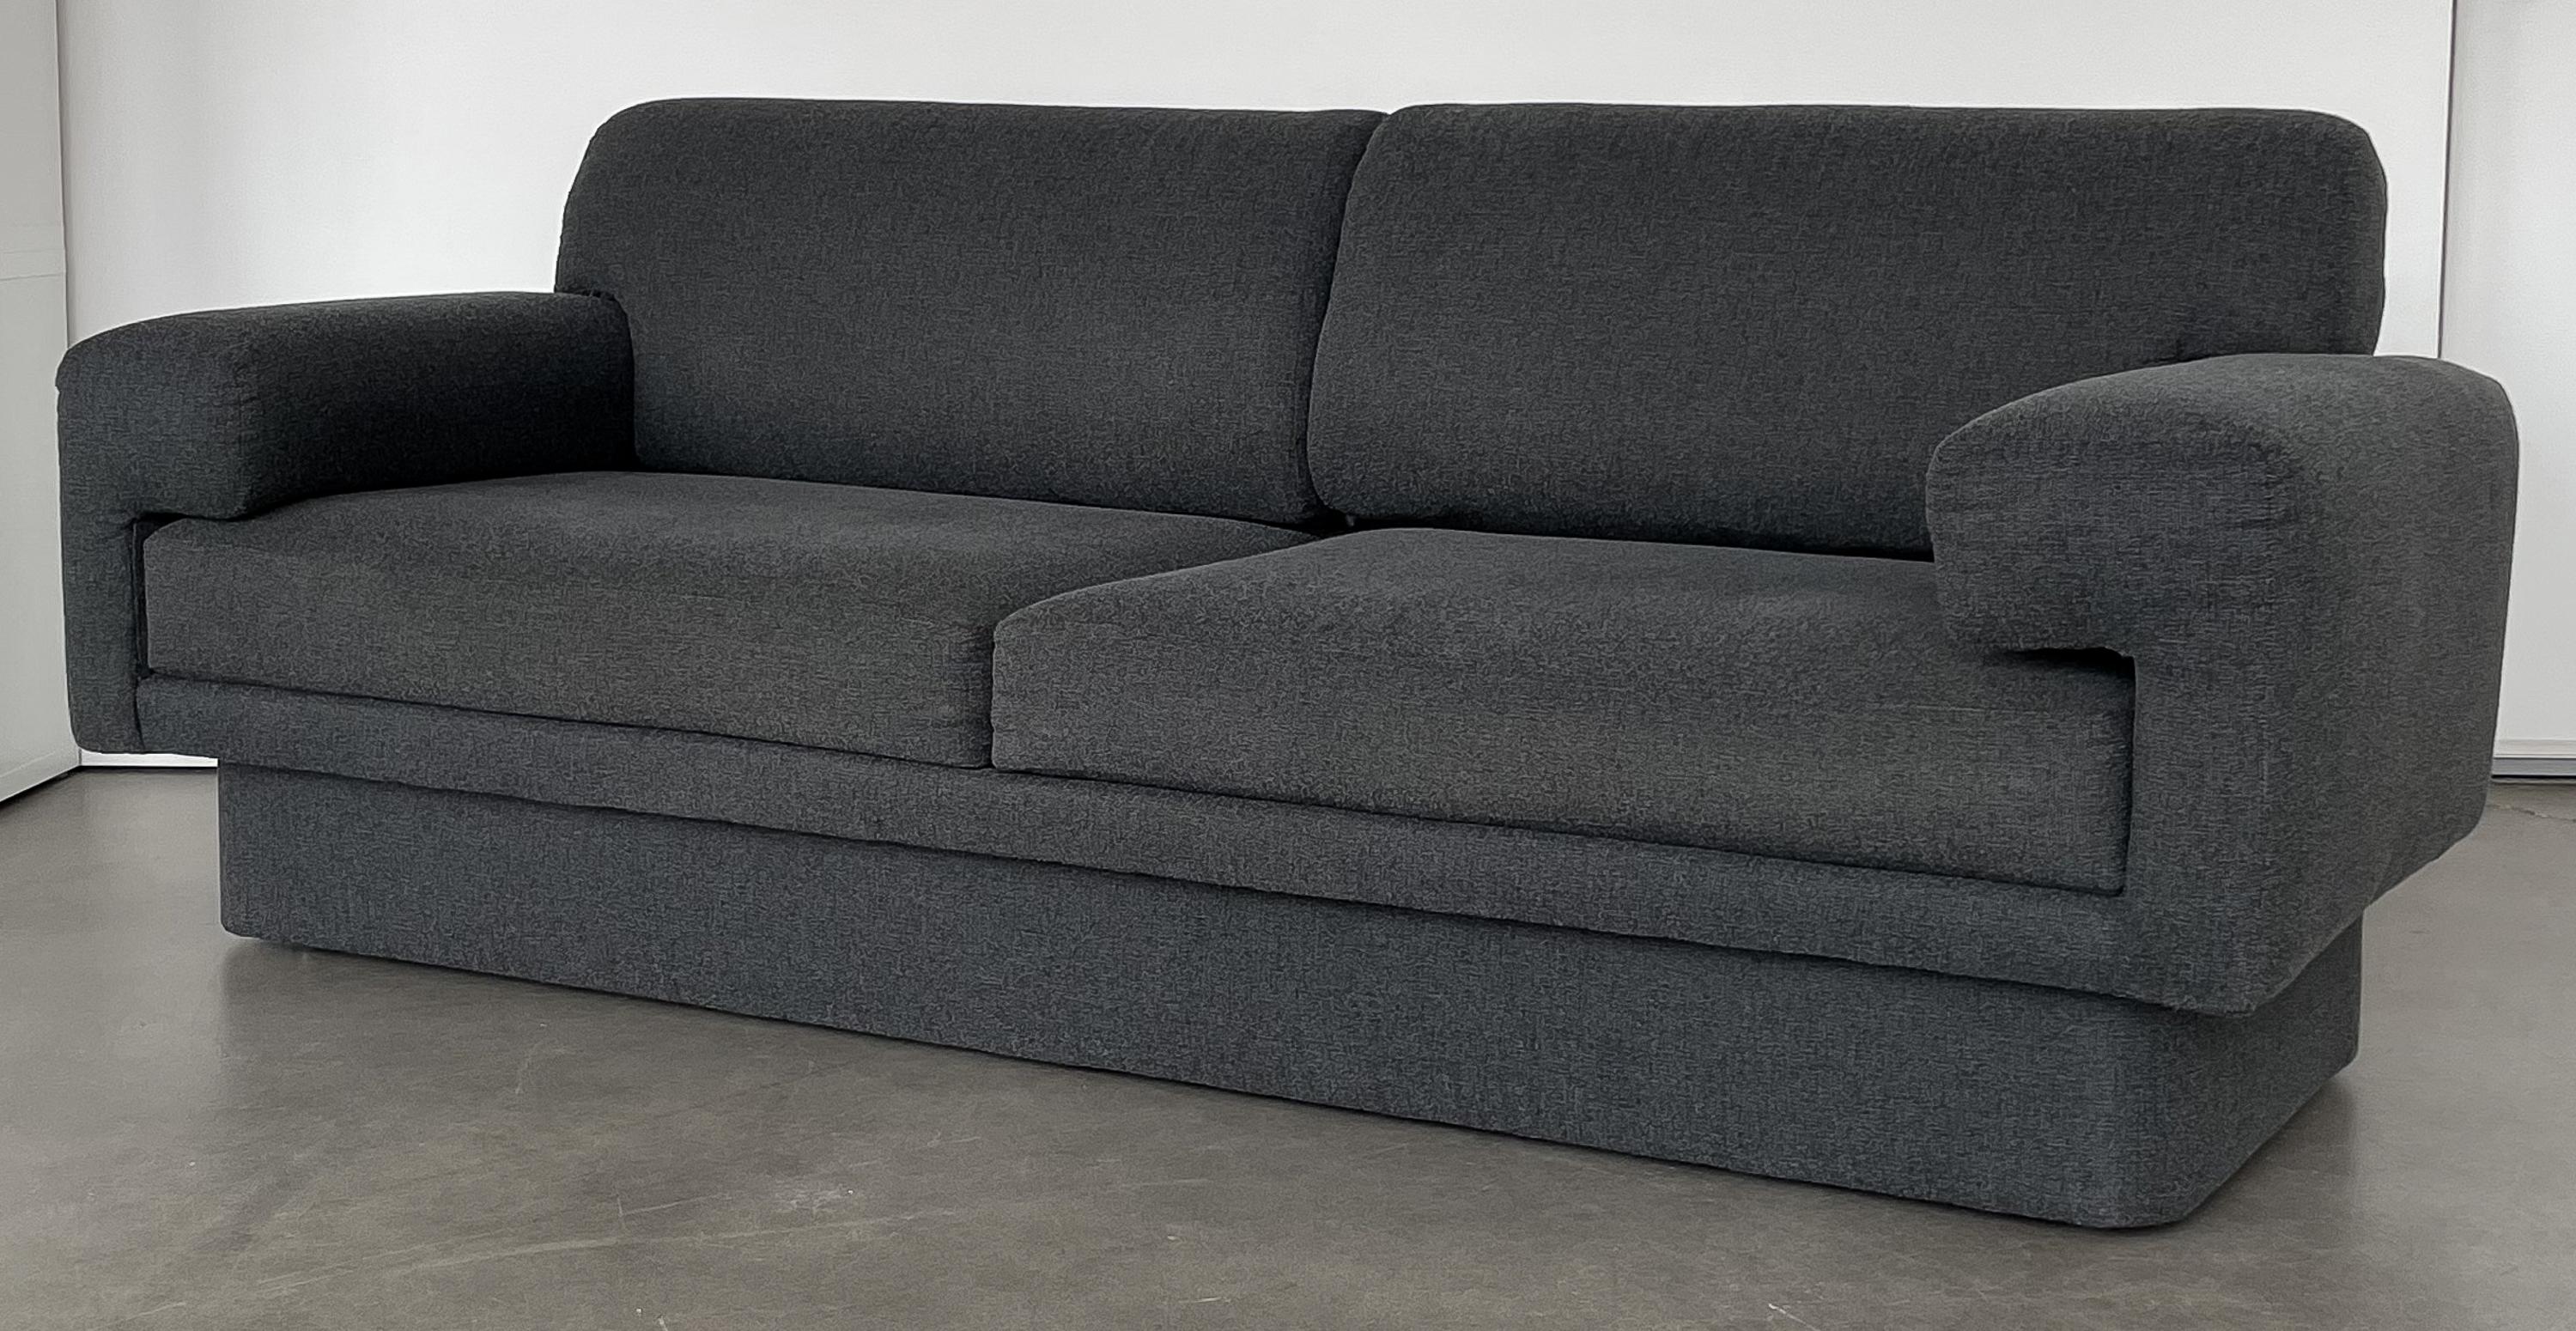 American Thayer Coggin Fully Upholstered Modernist Sofas